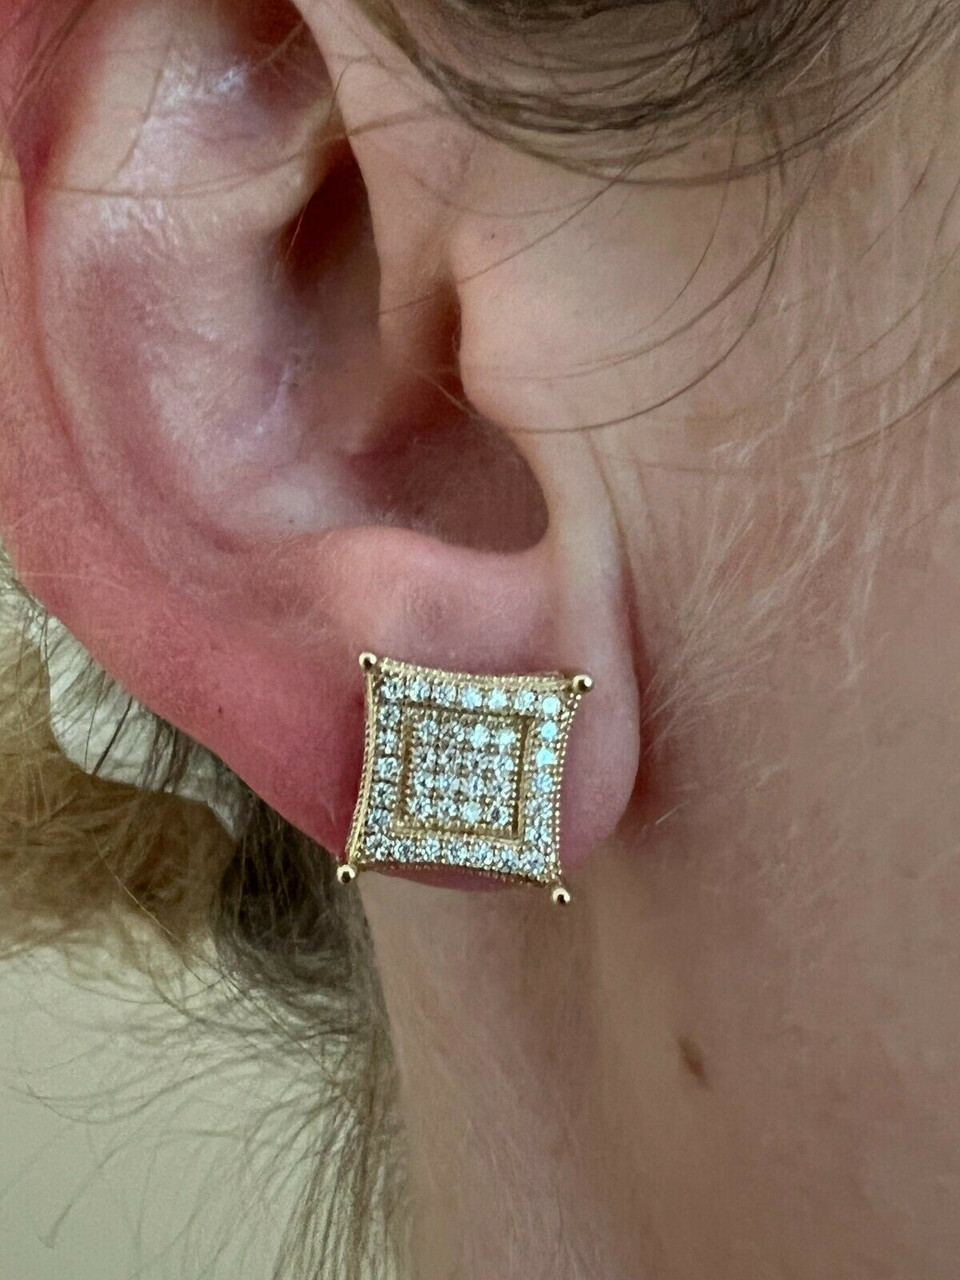 Earrings 14K 4.62ctw Diamond Cluster Stud Earrings - 14K Yellow Gold Stud,  Earrings - EARRI271697 | The RealReal